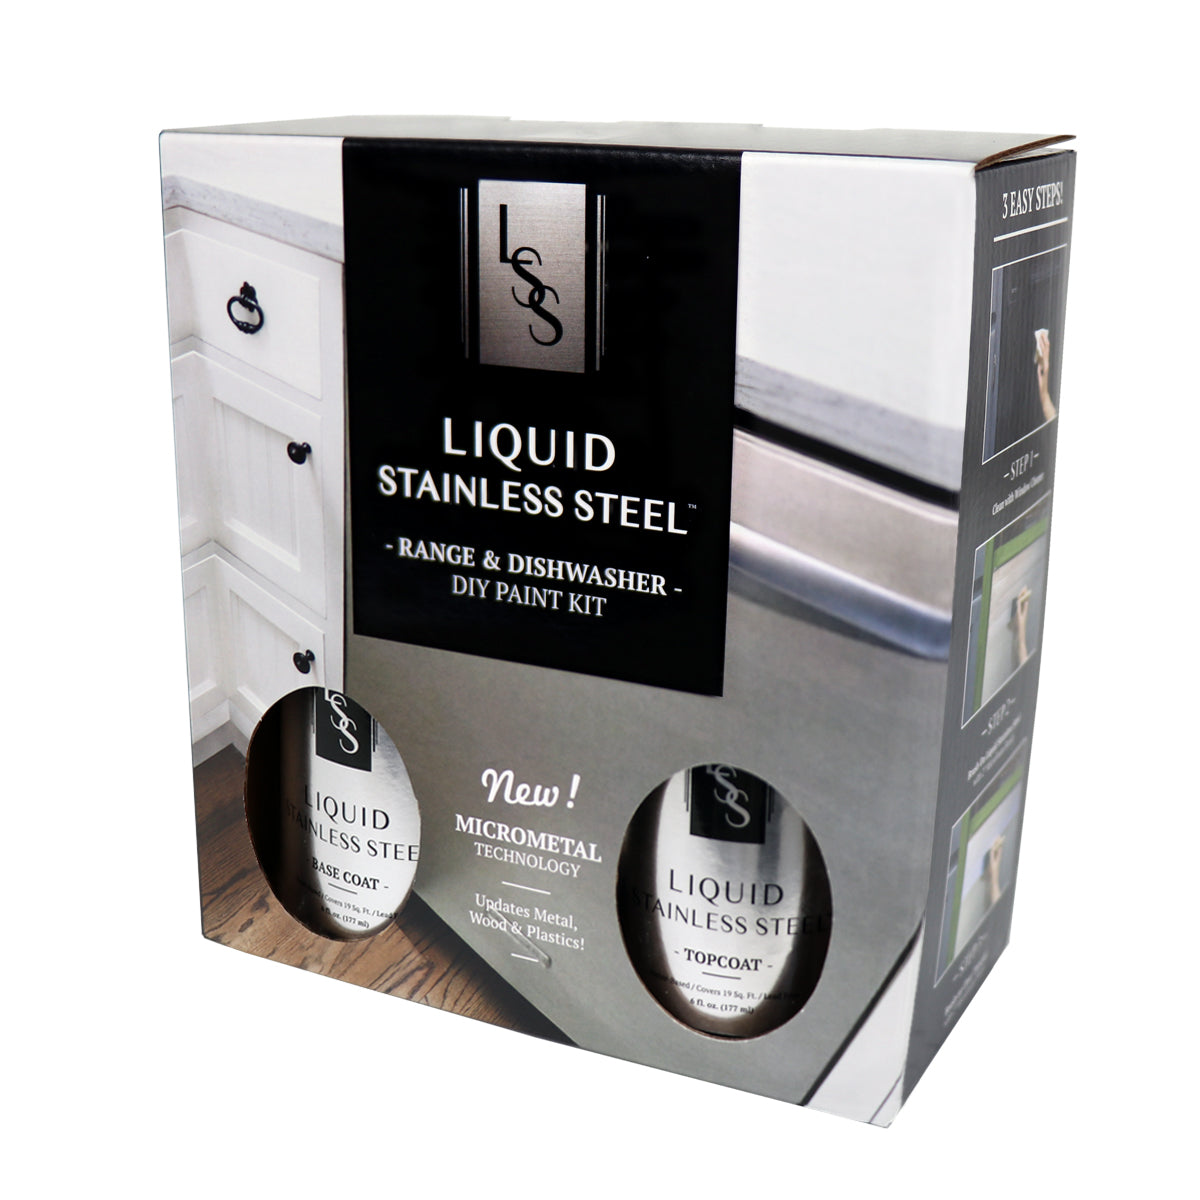 Liquid Stainless Steel Fridge Kit – Giani Inc.